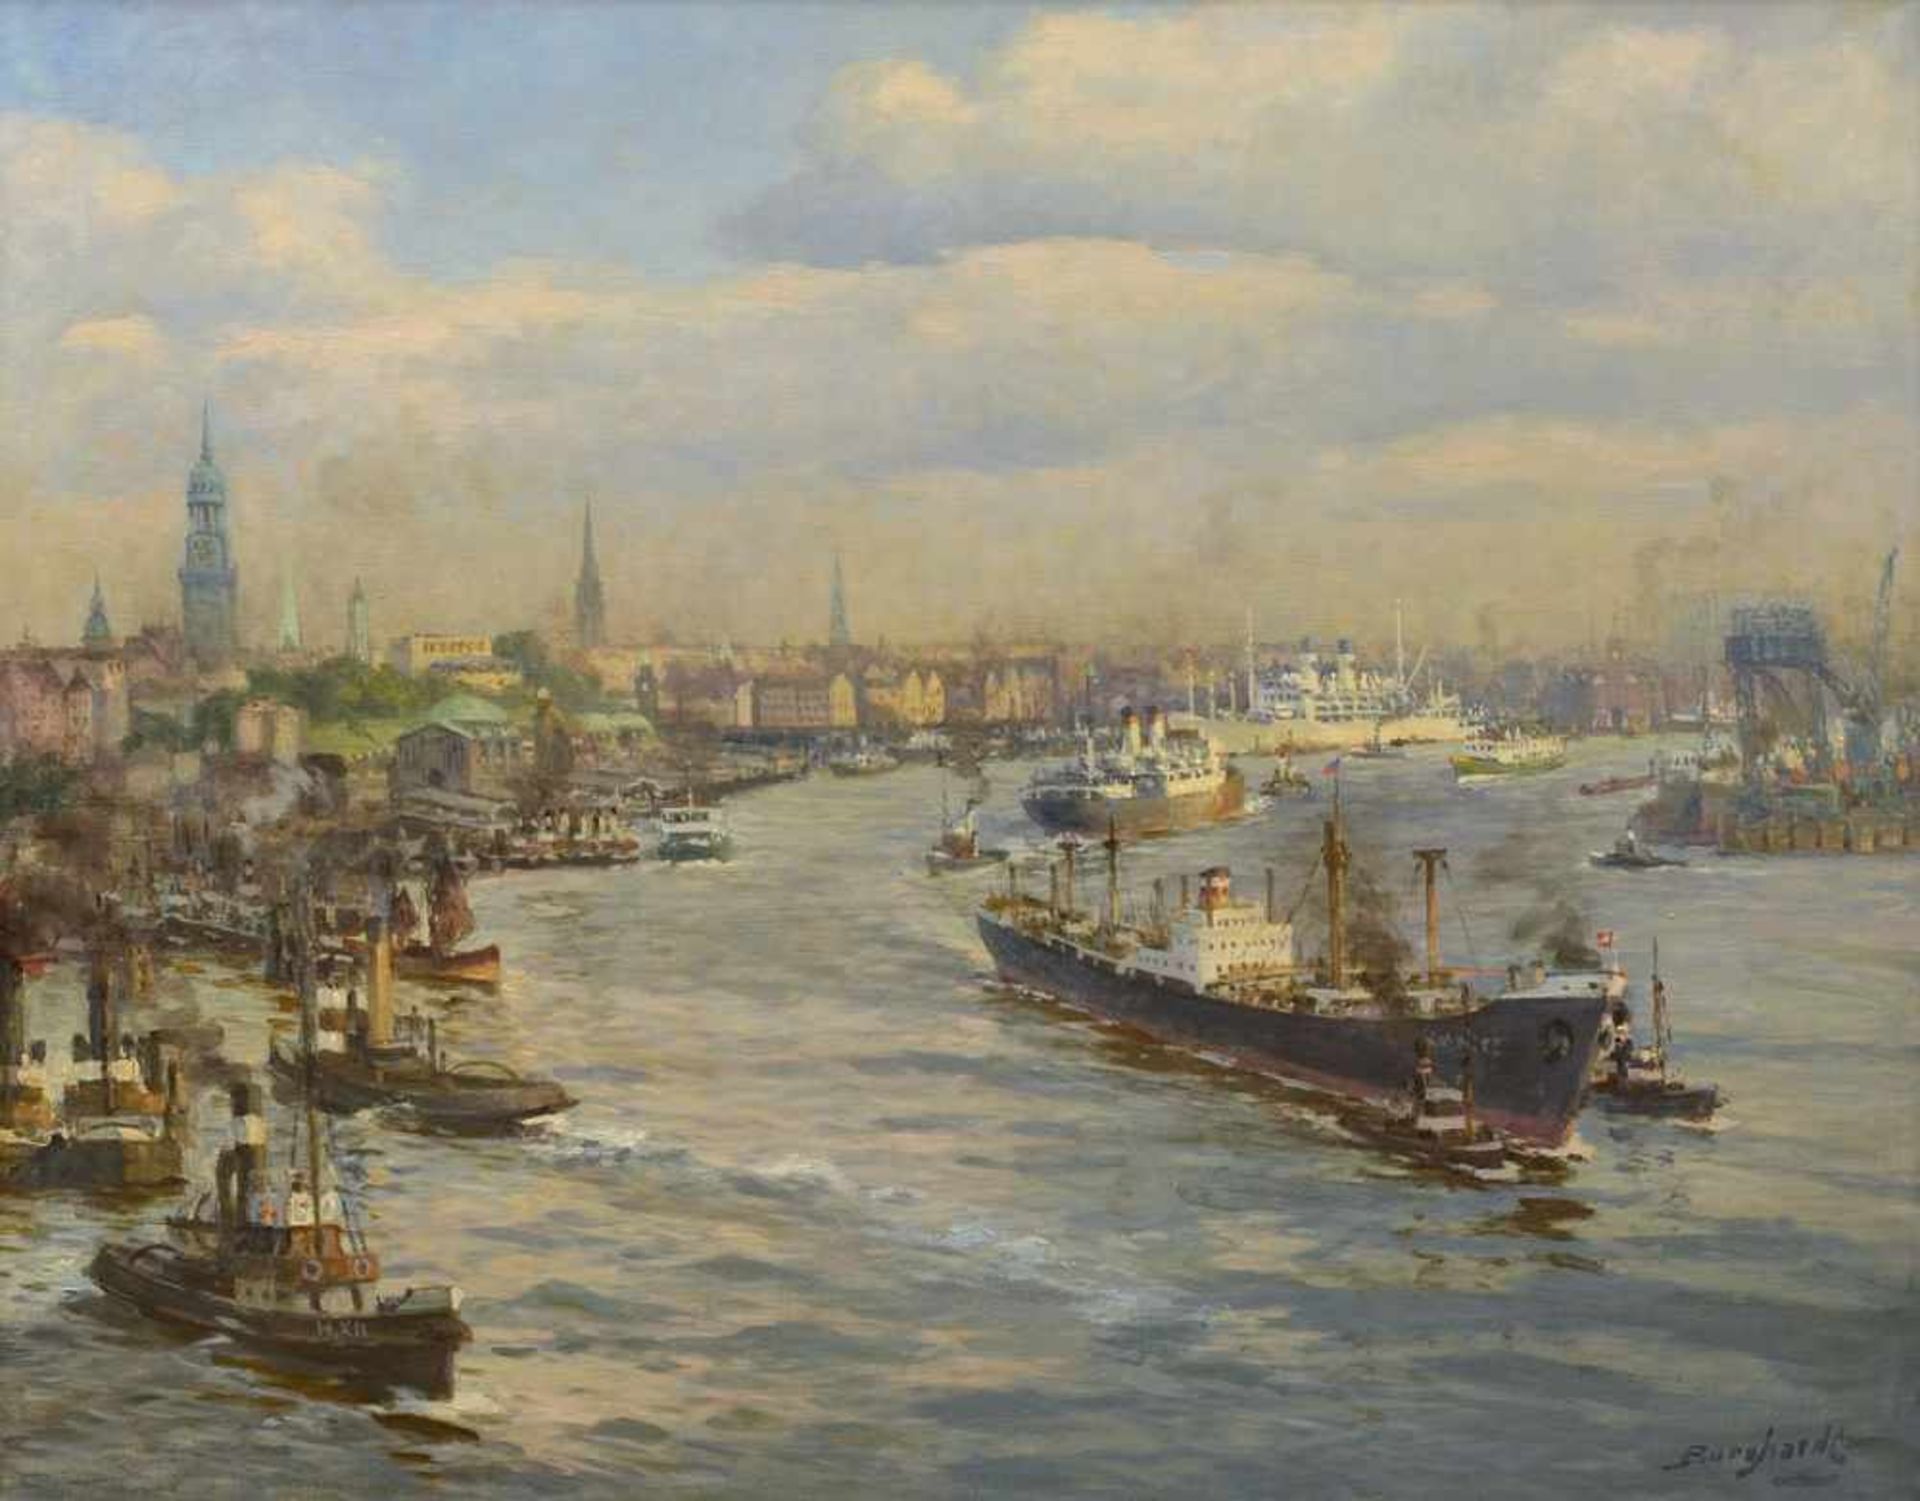 Burghardt, Gustav Paul (1875-1955) "Blick auf die Landungsbrücken in Hamburg aus der